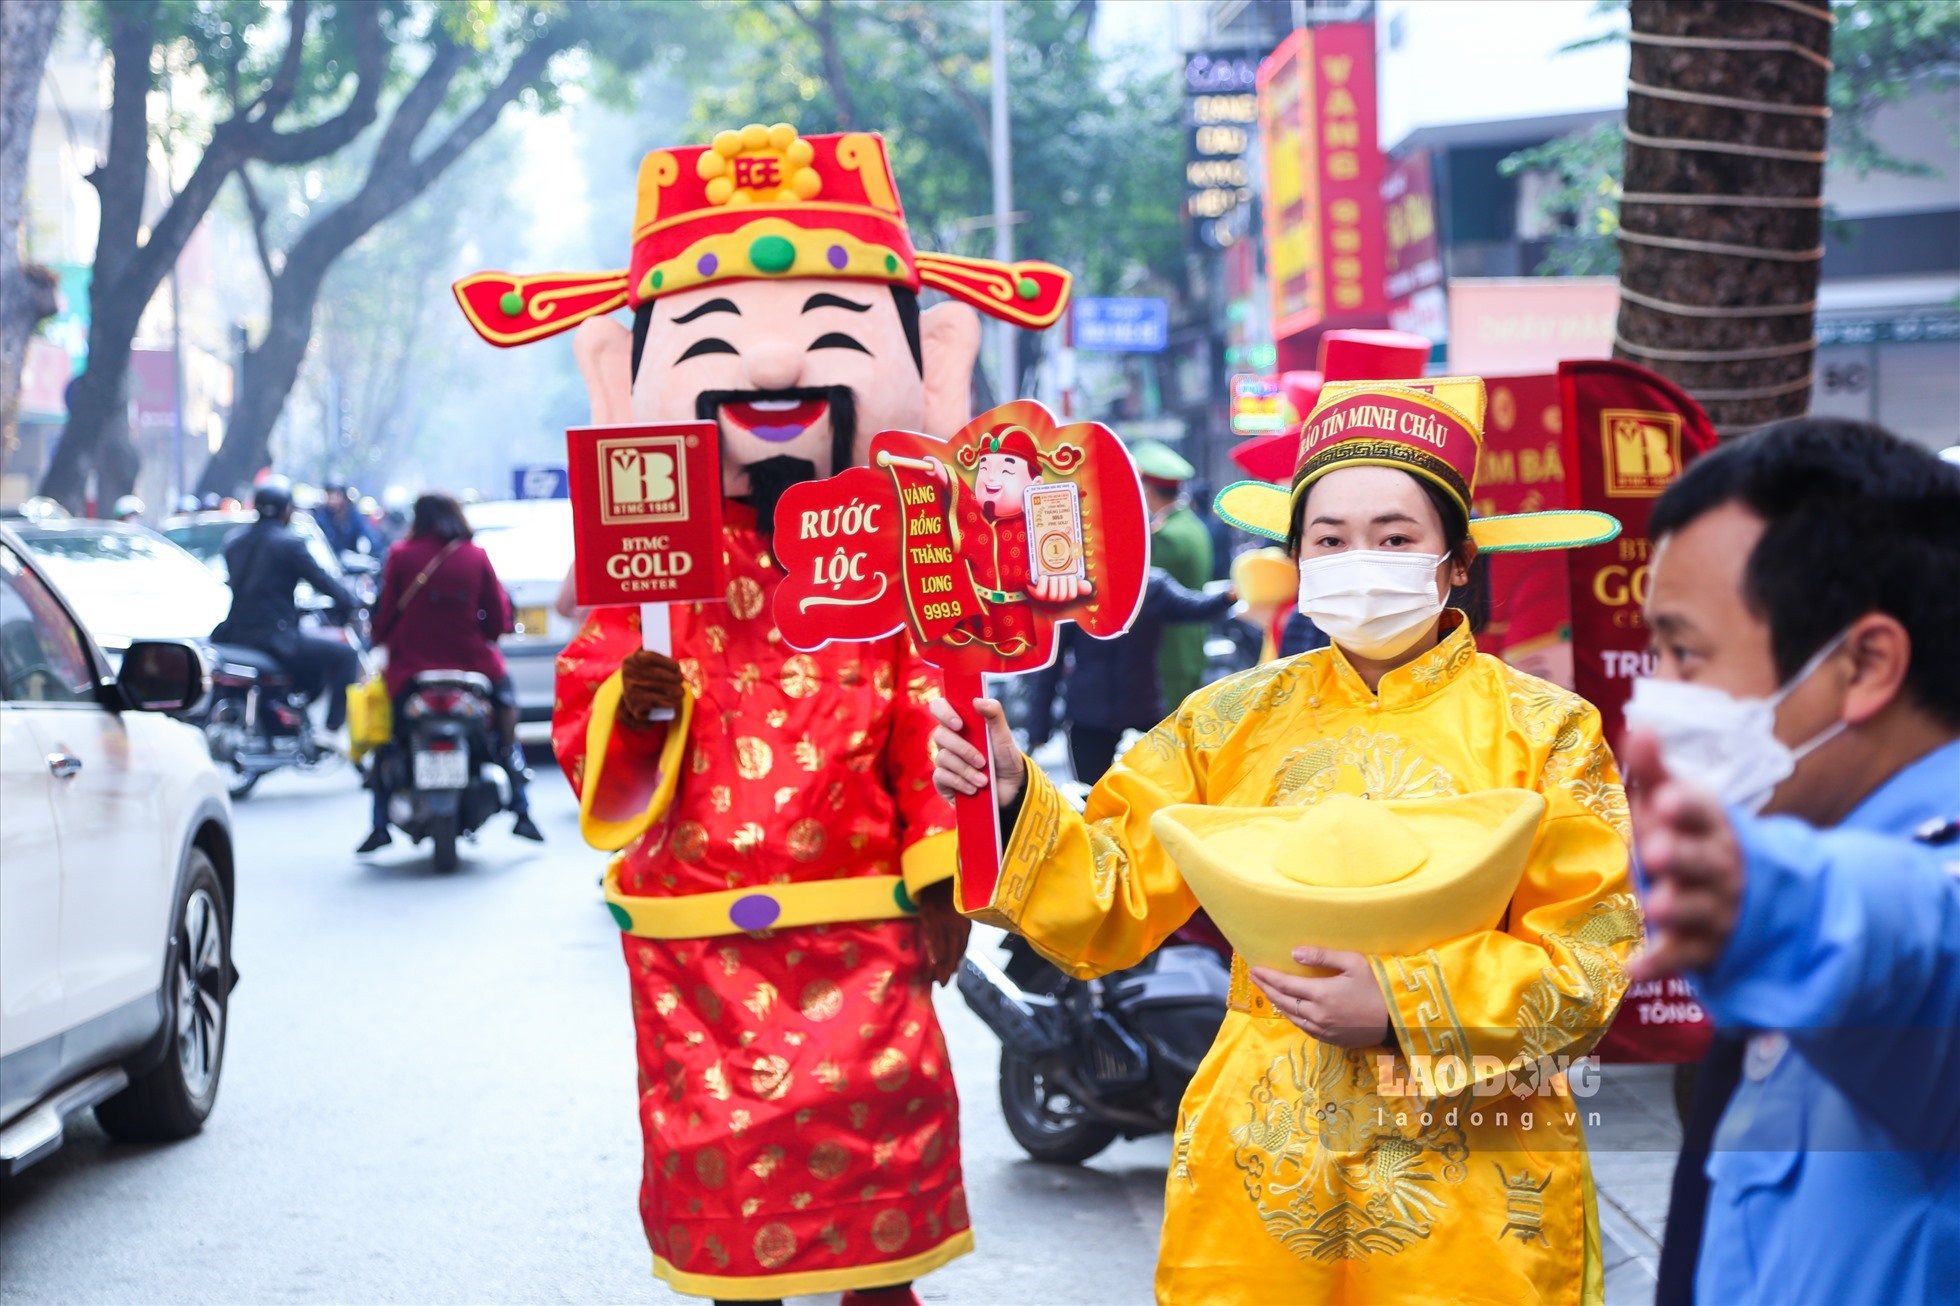 Không hiếm để bắt gặp những trang phục Thần tài chào khách dọc phố Trần Nhân Tông.